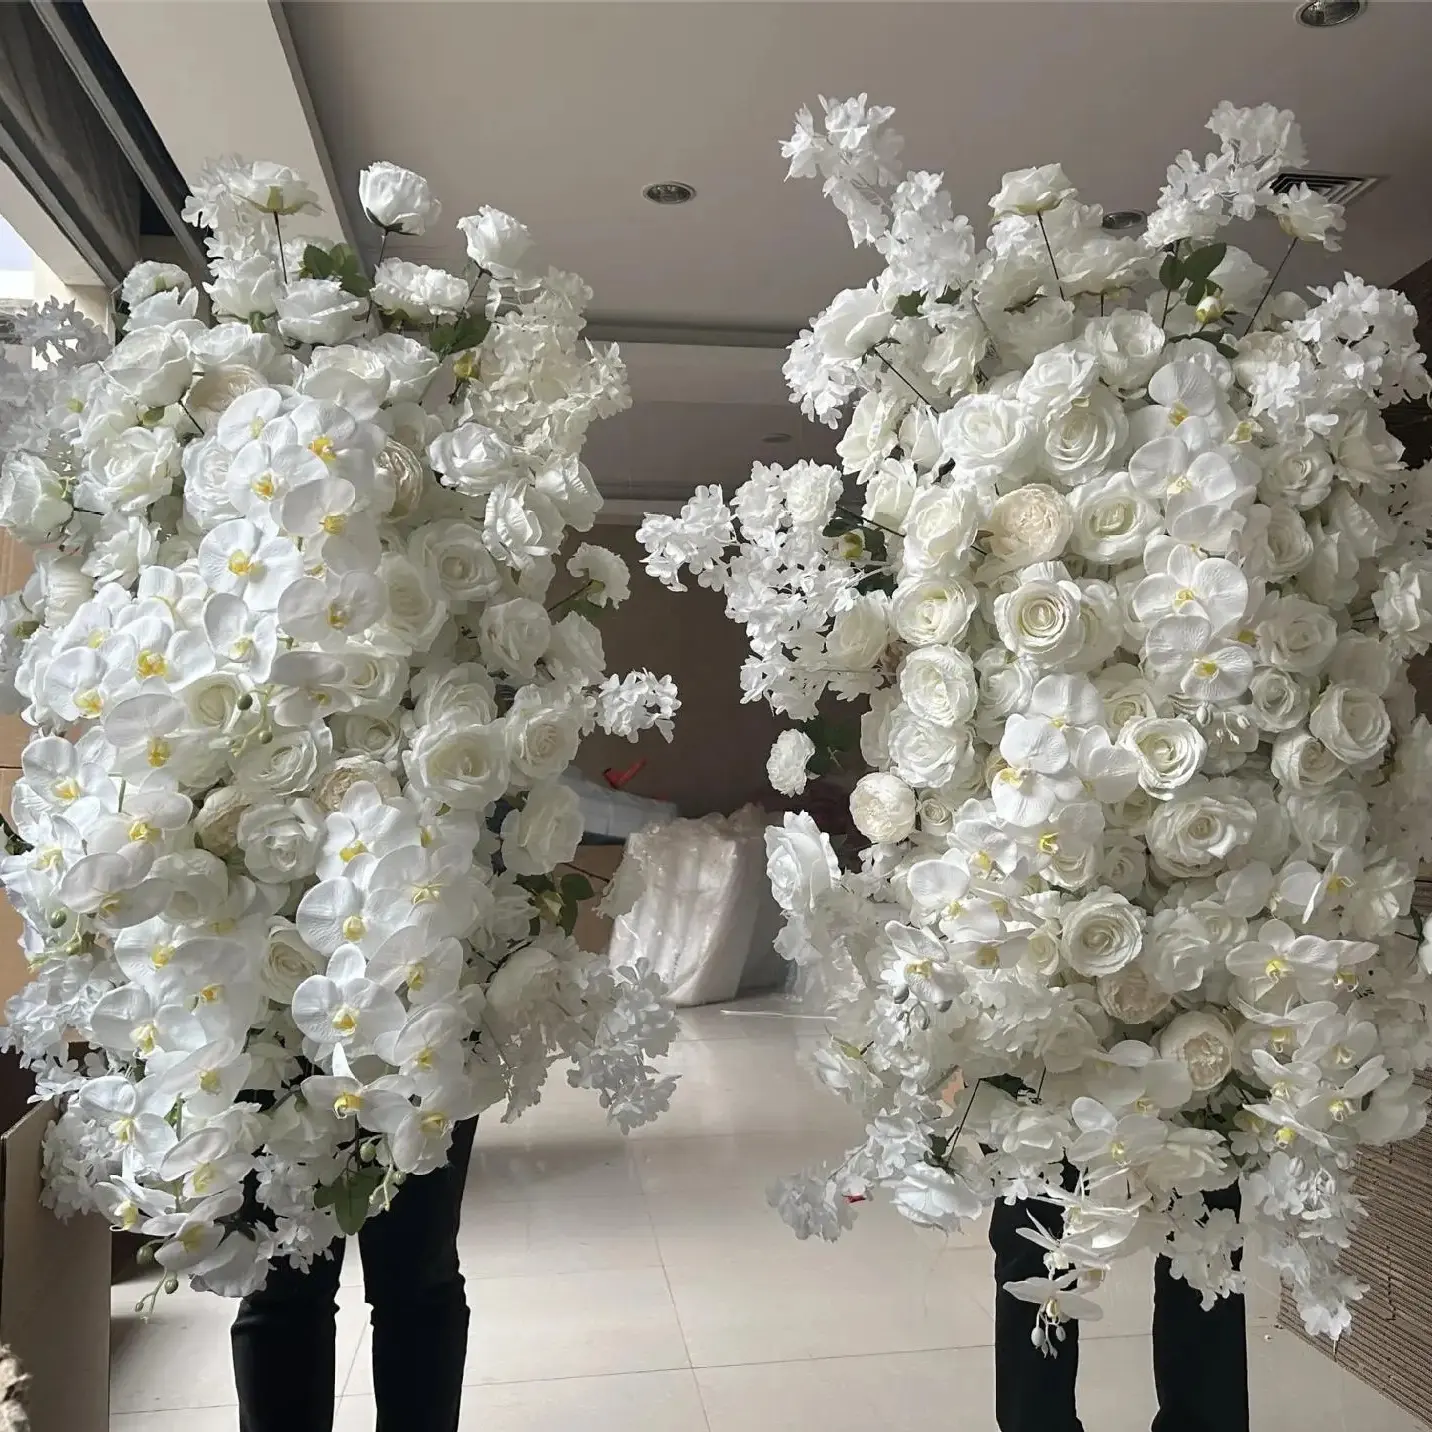 O-X878 mariage gouttes personnalisé arc fleur rangée événements scène toile de fond décorations soie fleur de cerisier blanc fleur artificielle allée